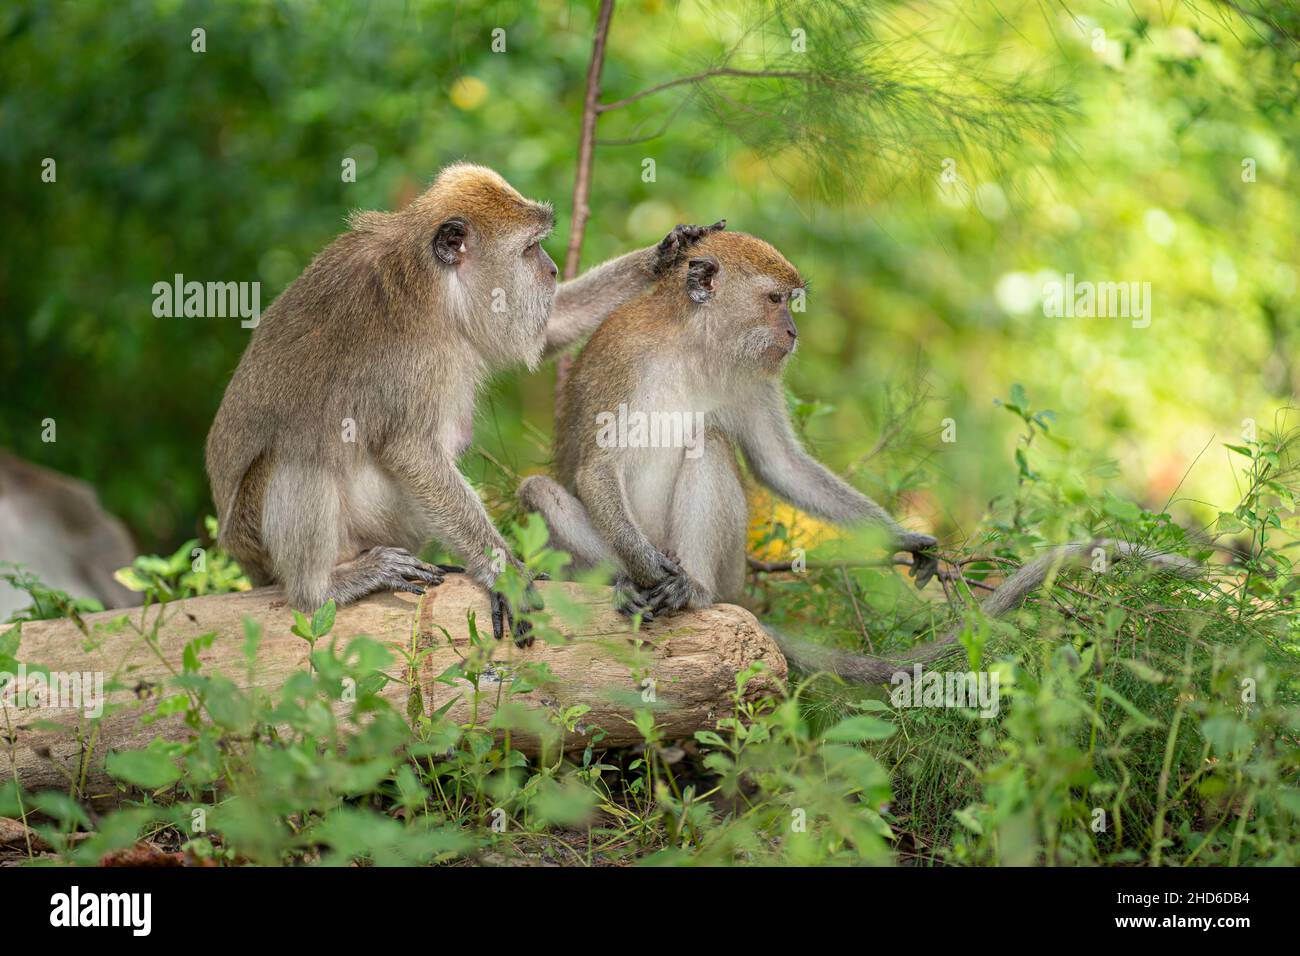 Ein Affe klopft dem anderen auf den Kopf, während er auf einem gefallenen Baumstamm sitzt. Selektive Fokuspunkte Stockfoto